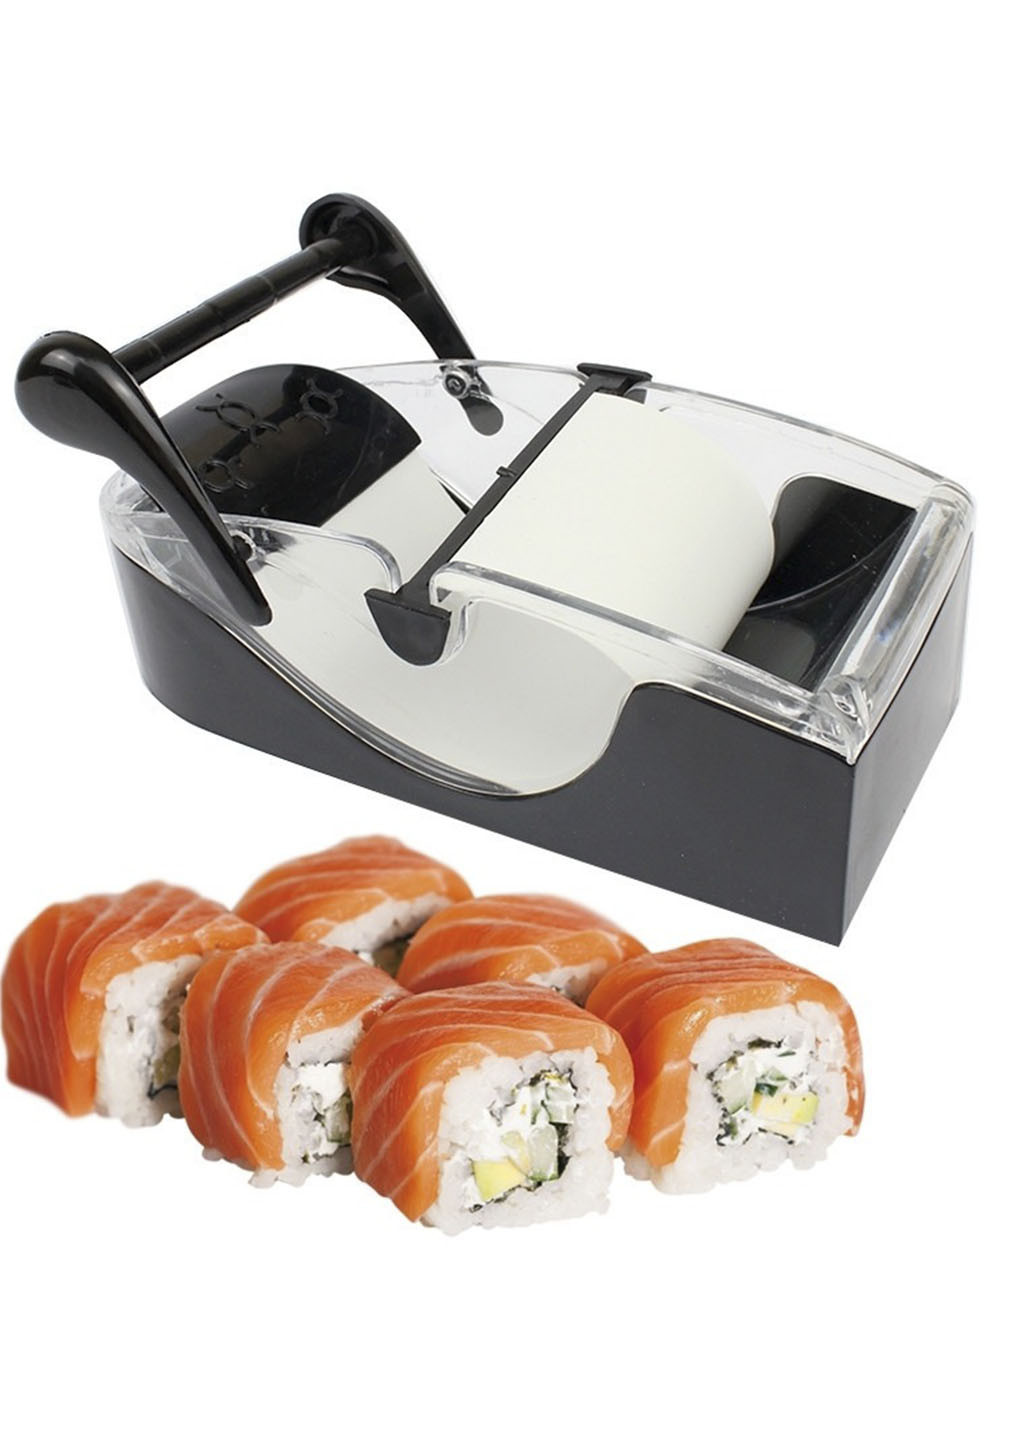 Прилад для приготування суші та ролів Perfect Roll Sushi! машинка для закрутки суші та ролів XO (253059326)